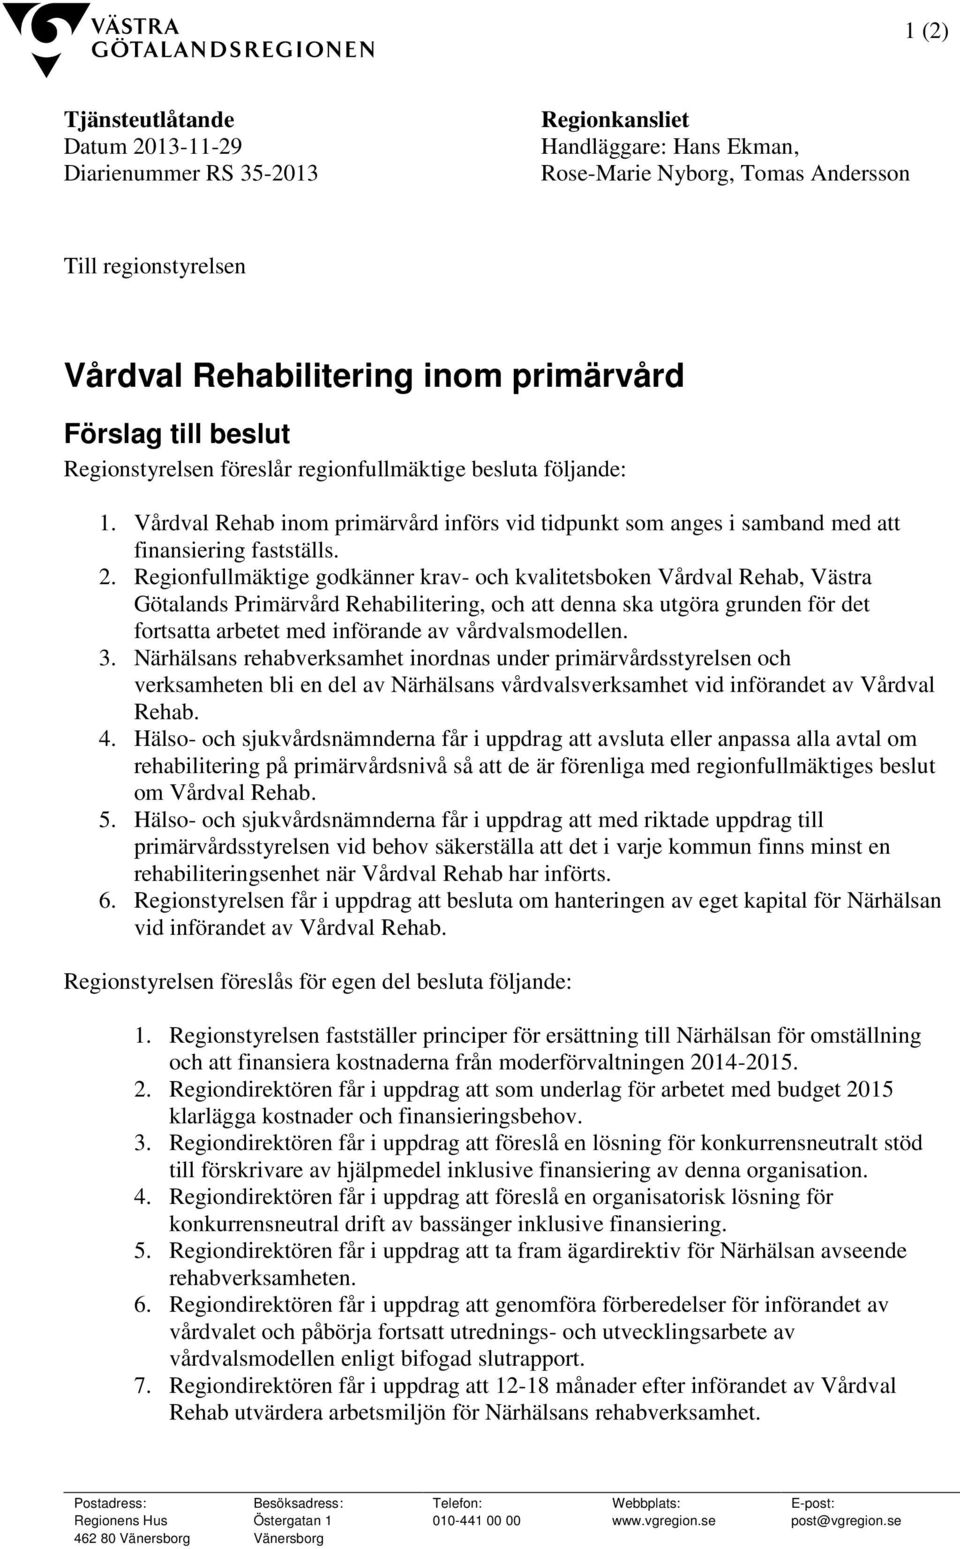 Regionfullmäktige godkänner krav- och kvalitetsboken Vårdval Rehab, Västra Götalands Primärvård Rehabilitering, och att denna ska utgöra grunden för det fortsatta arbetet med införande av